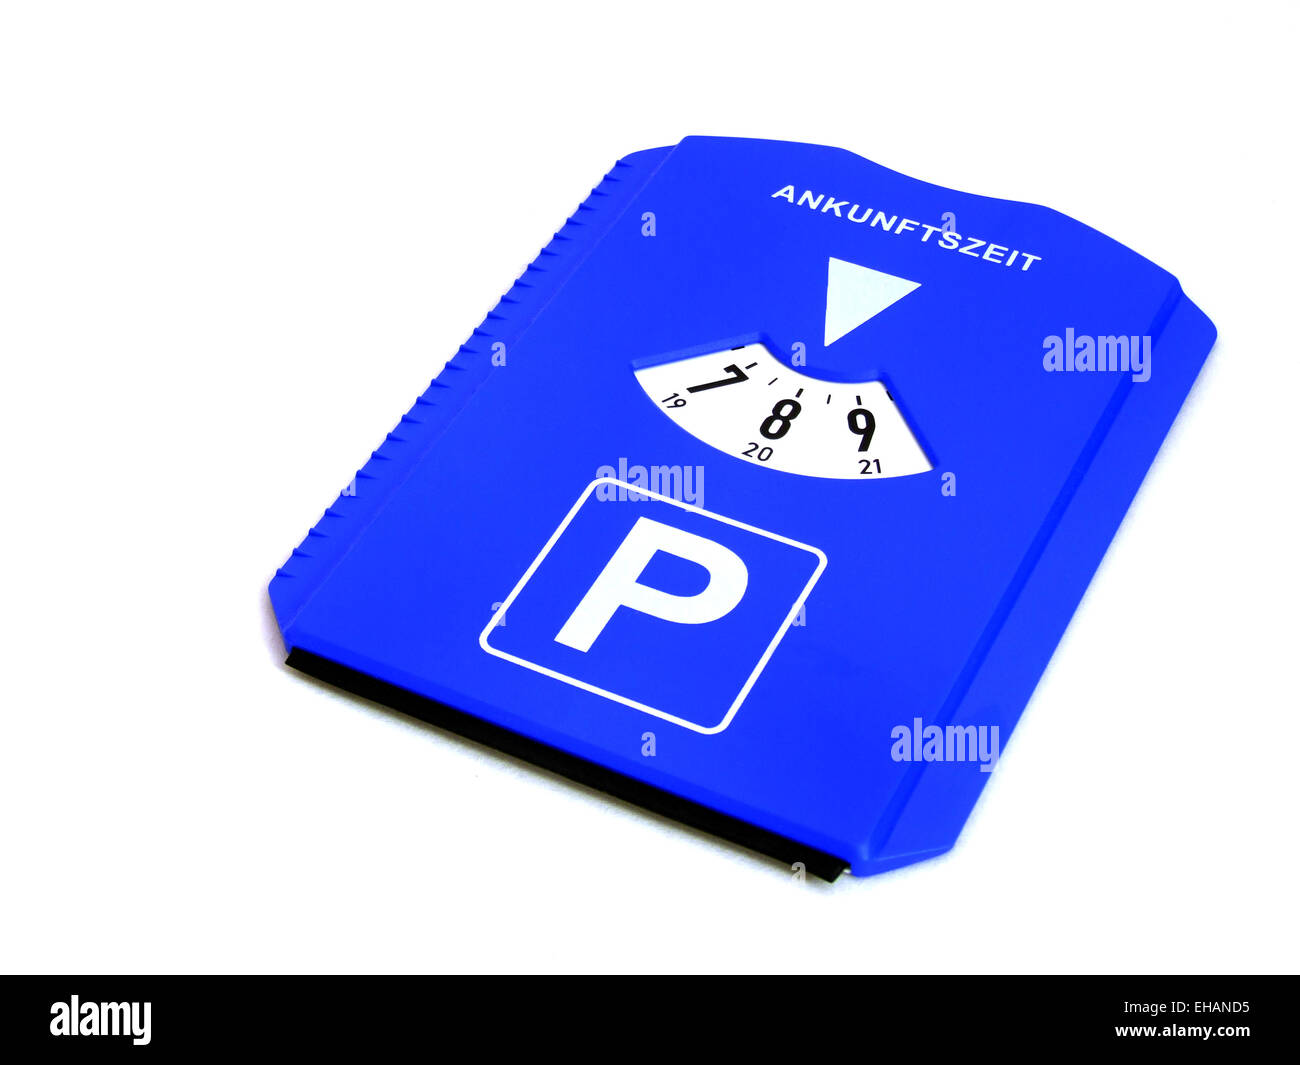 https://c8.alamy.com/comp/EHAND5/parkscheibe-parking-disk-EHAND5.jpg